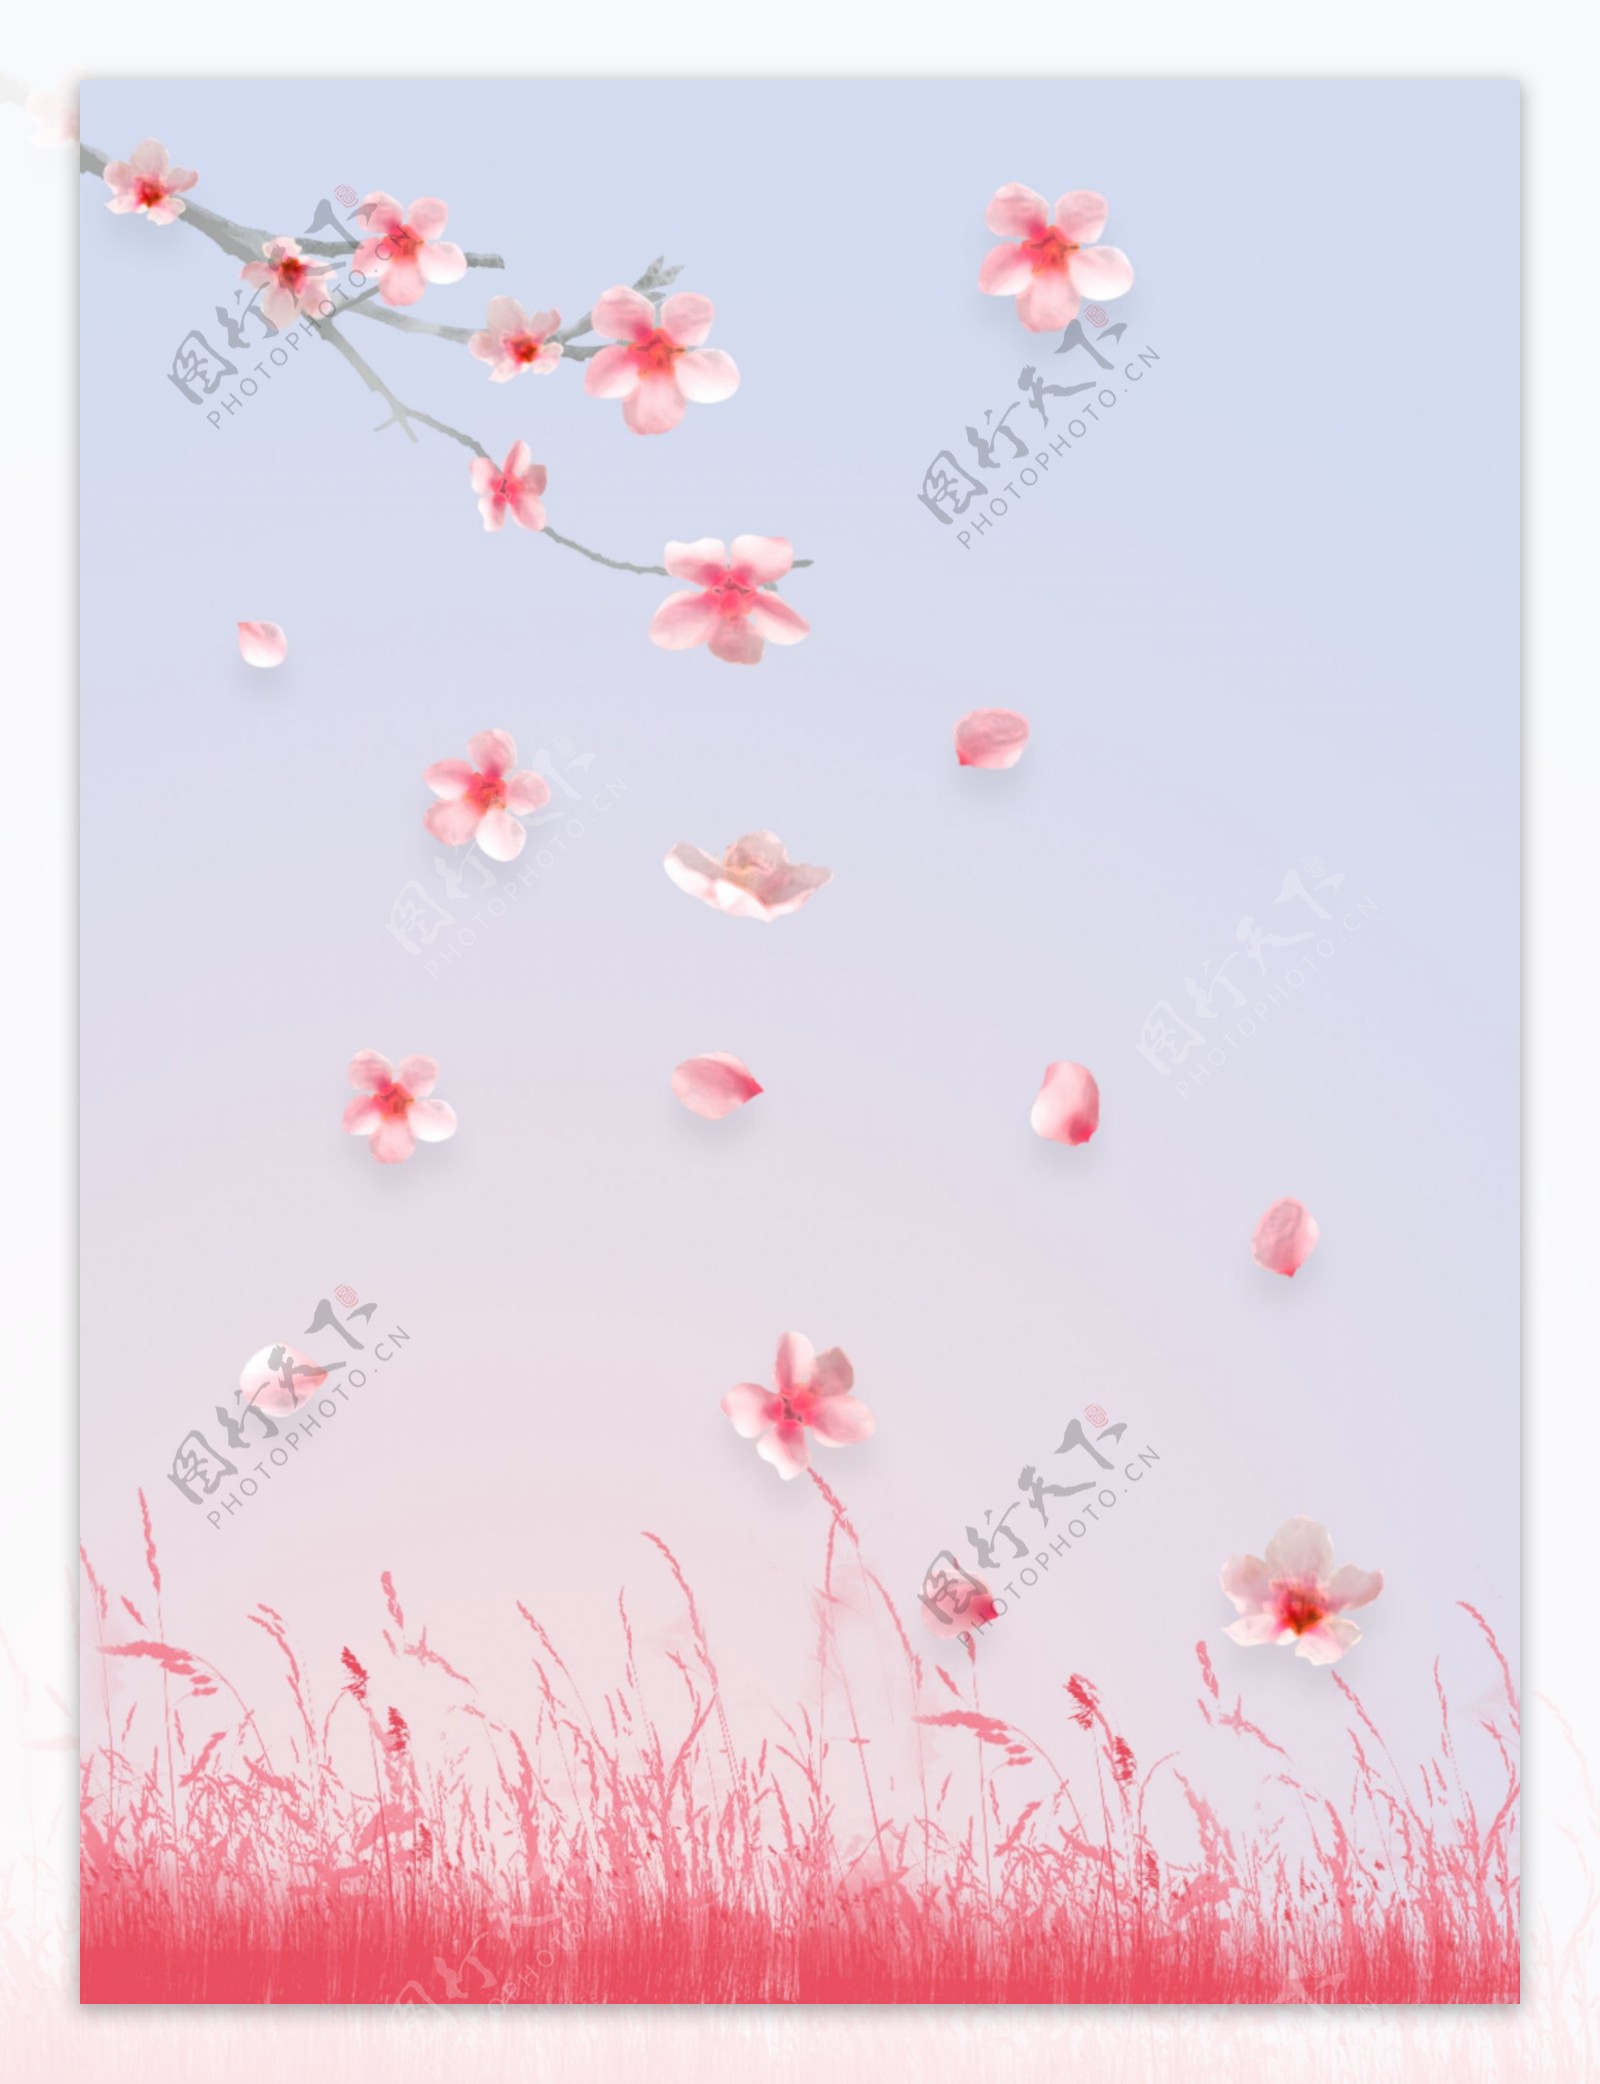 桃花飘落粉色背景图